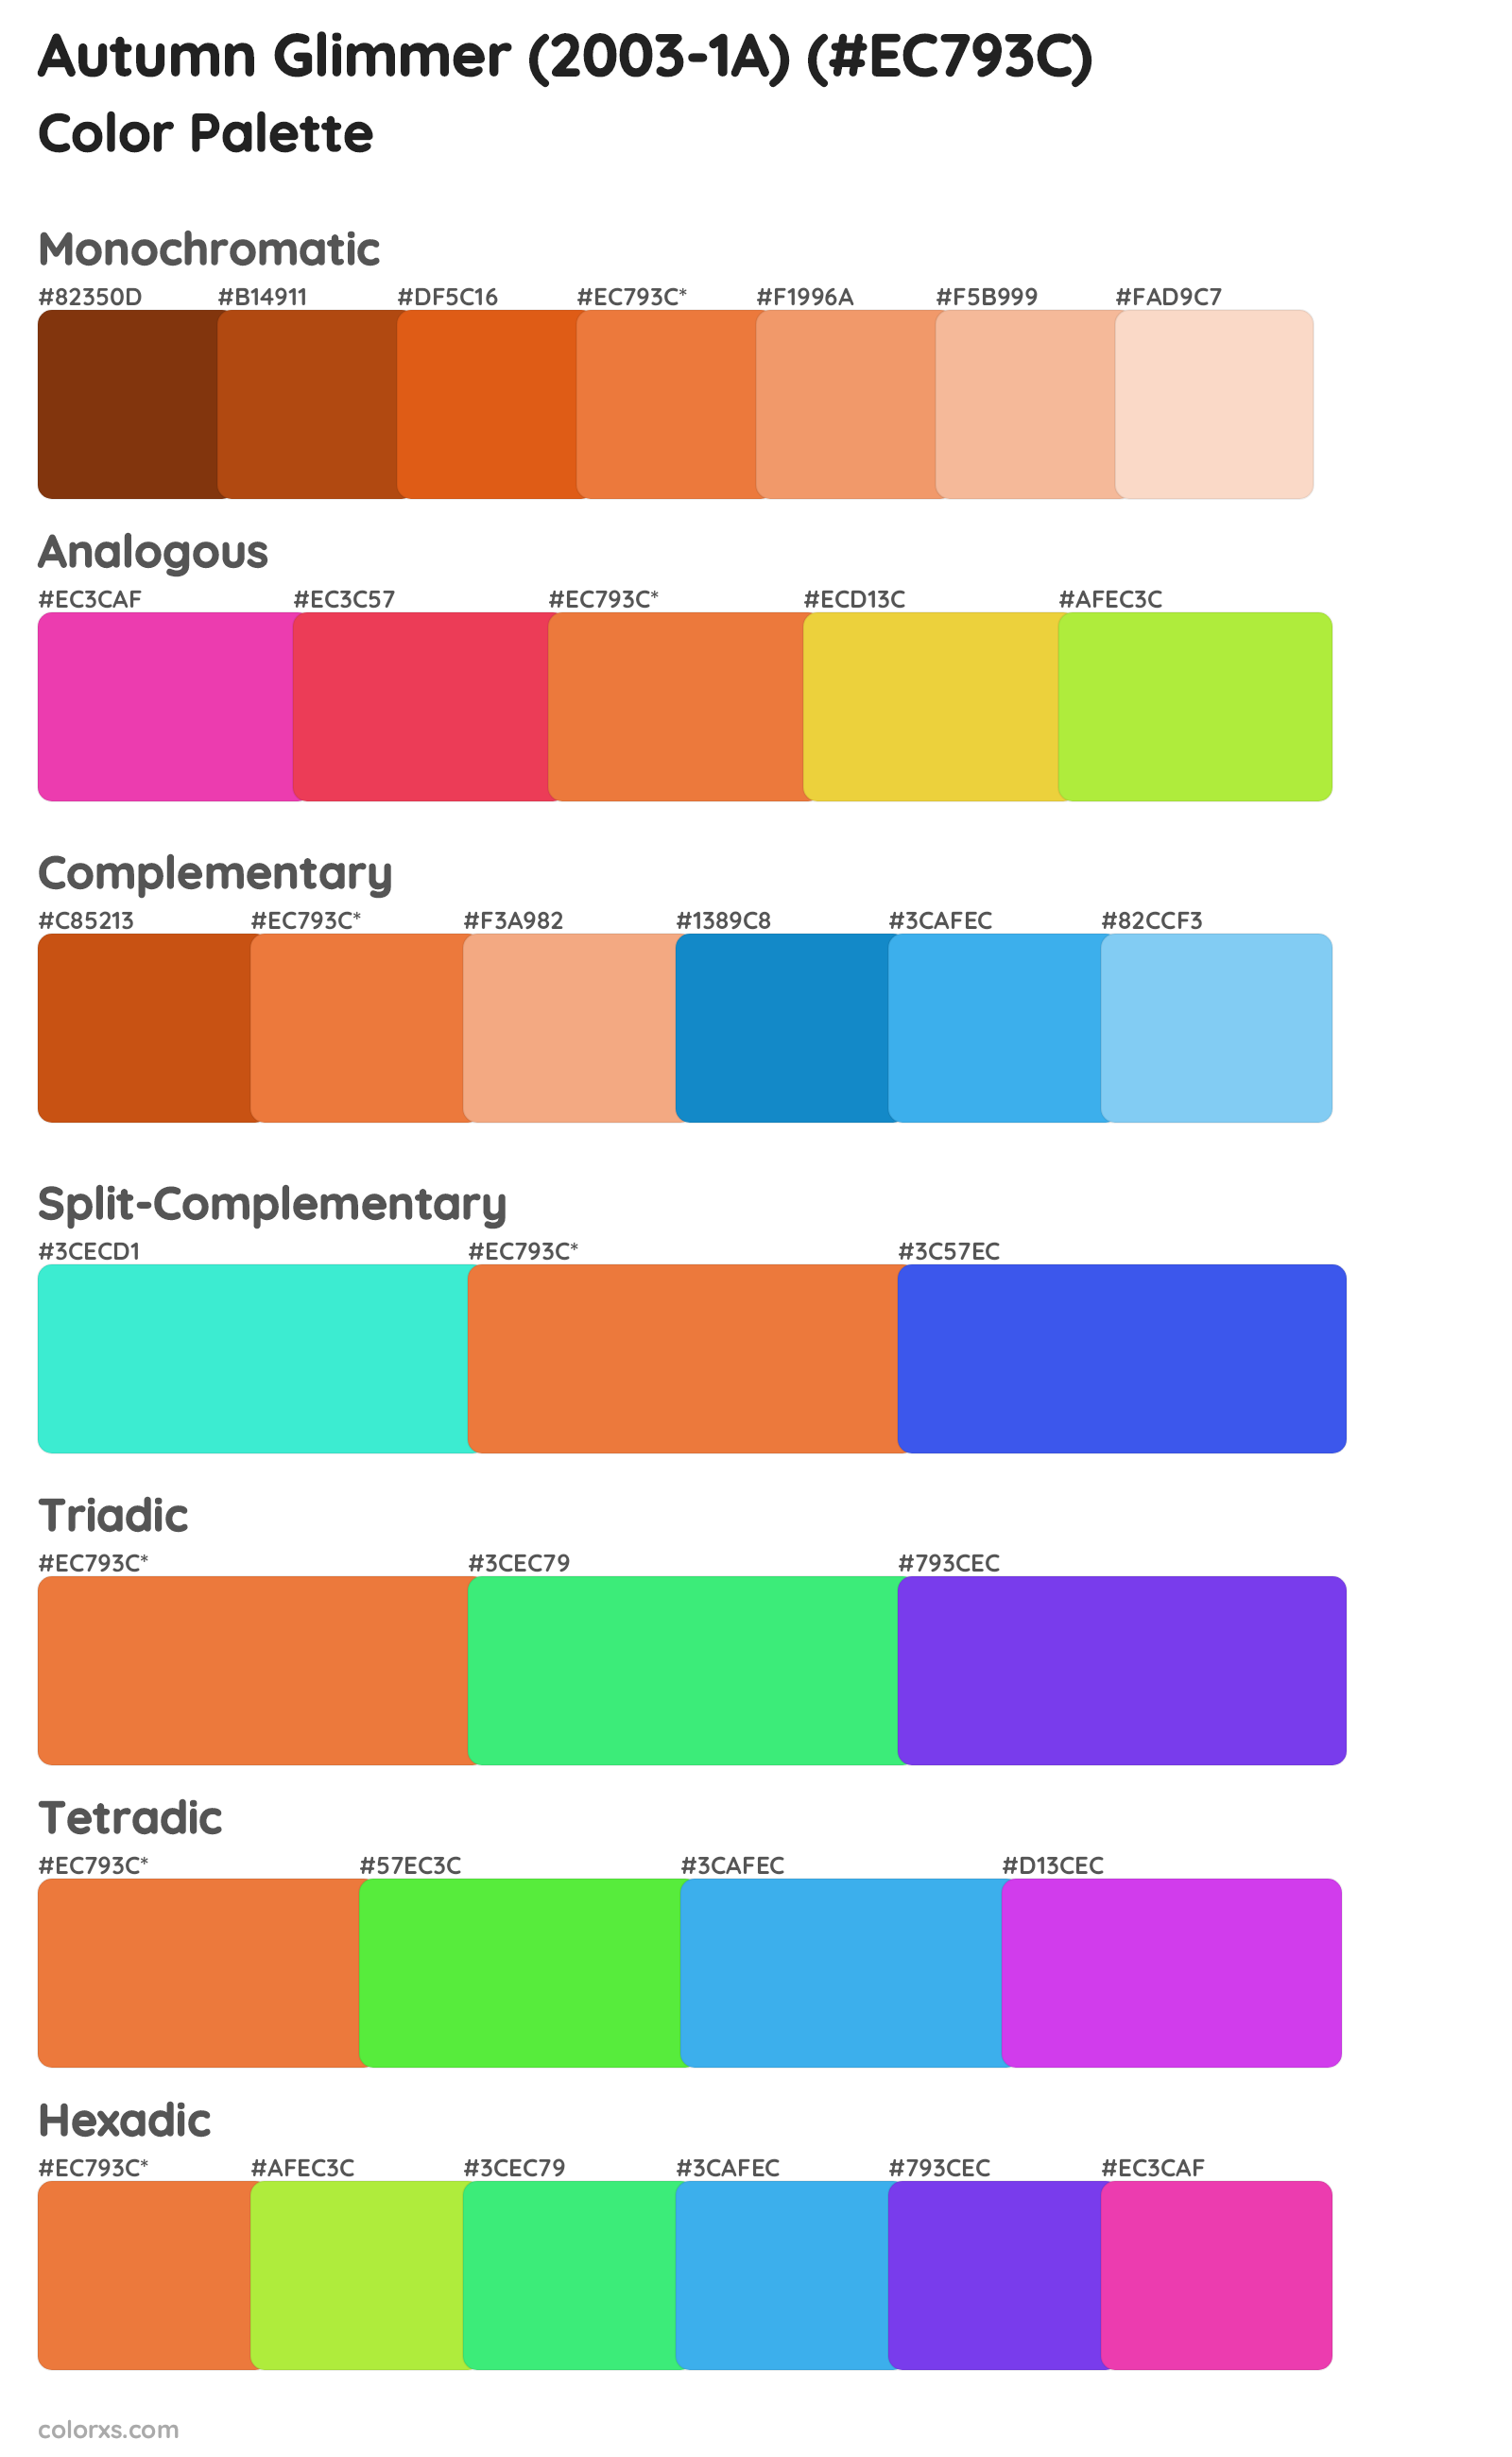 Autumn Glimmer (2003-1A) Color Scheme Palettes